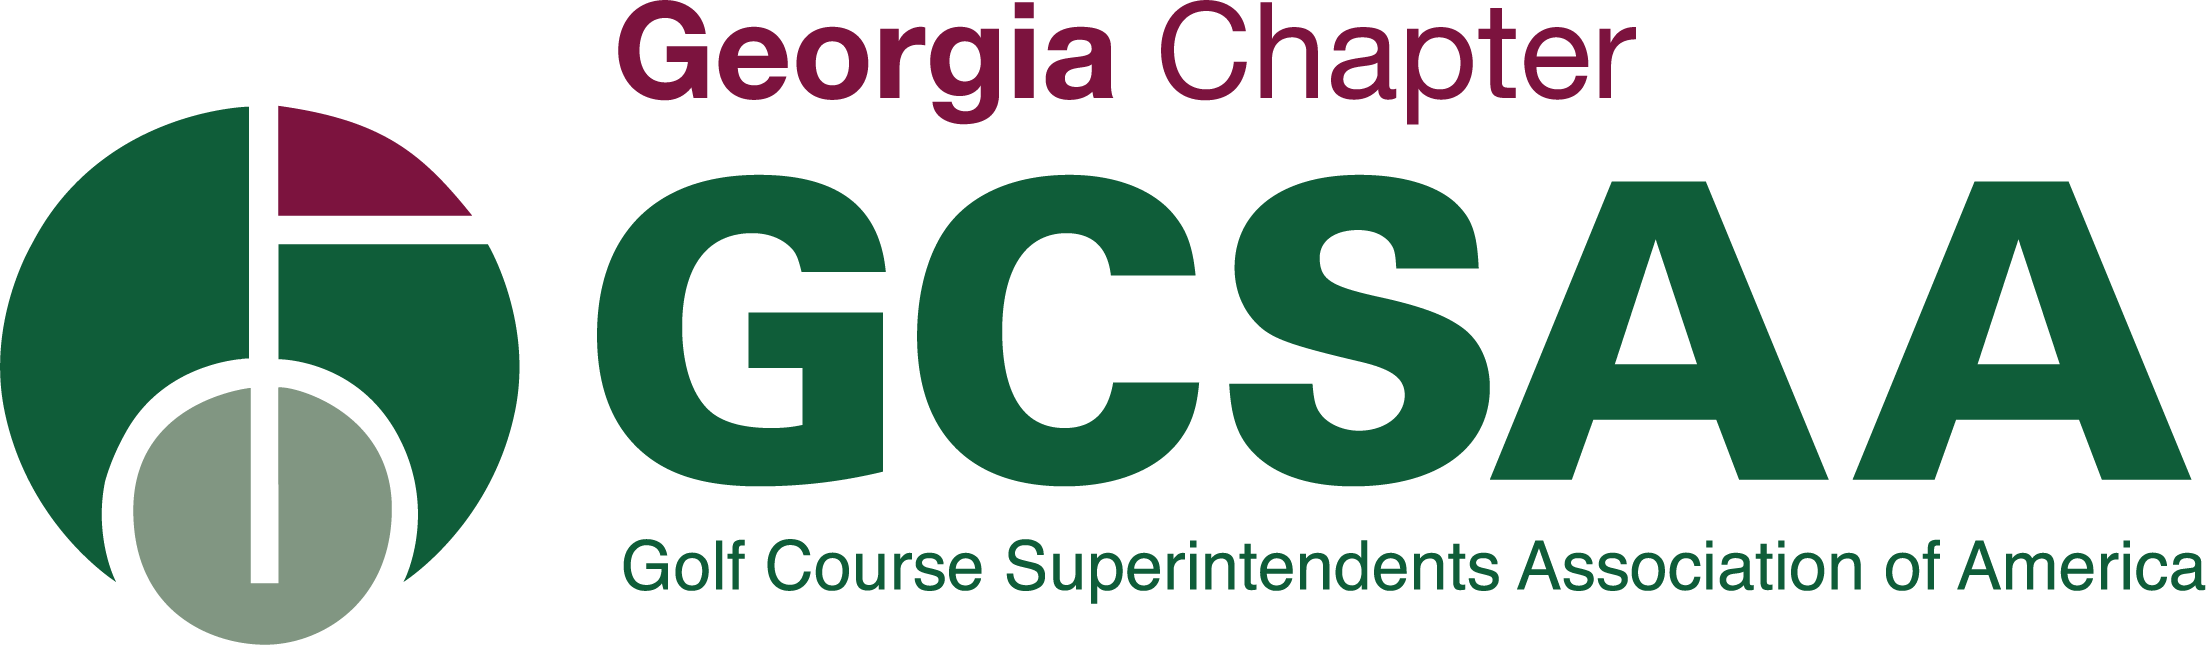 GCSGA Logo